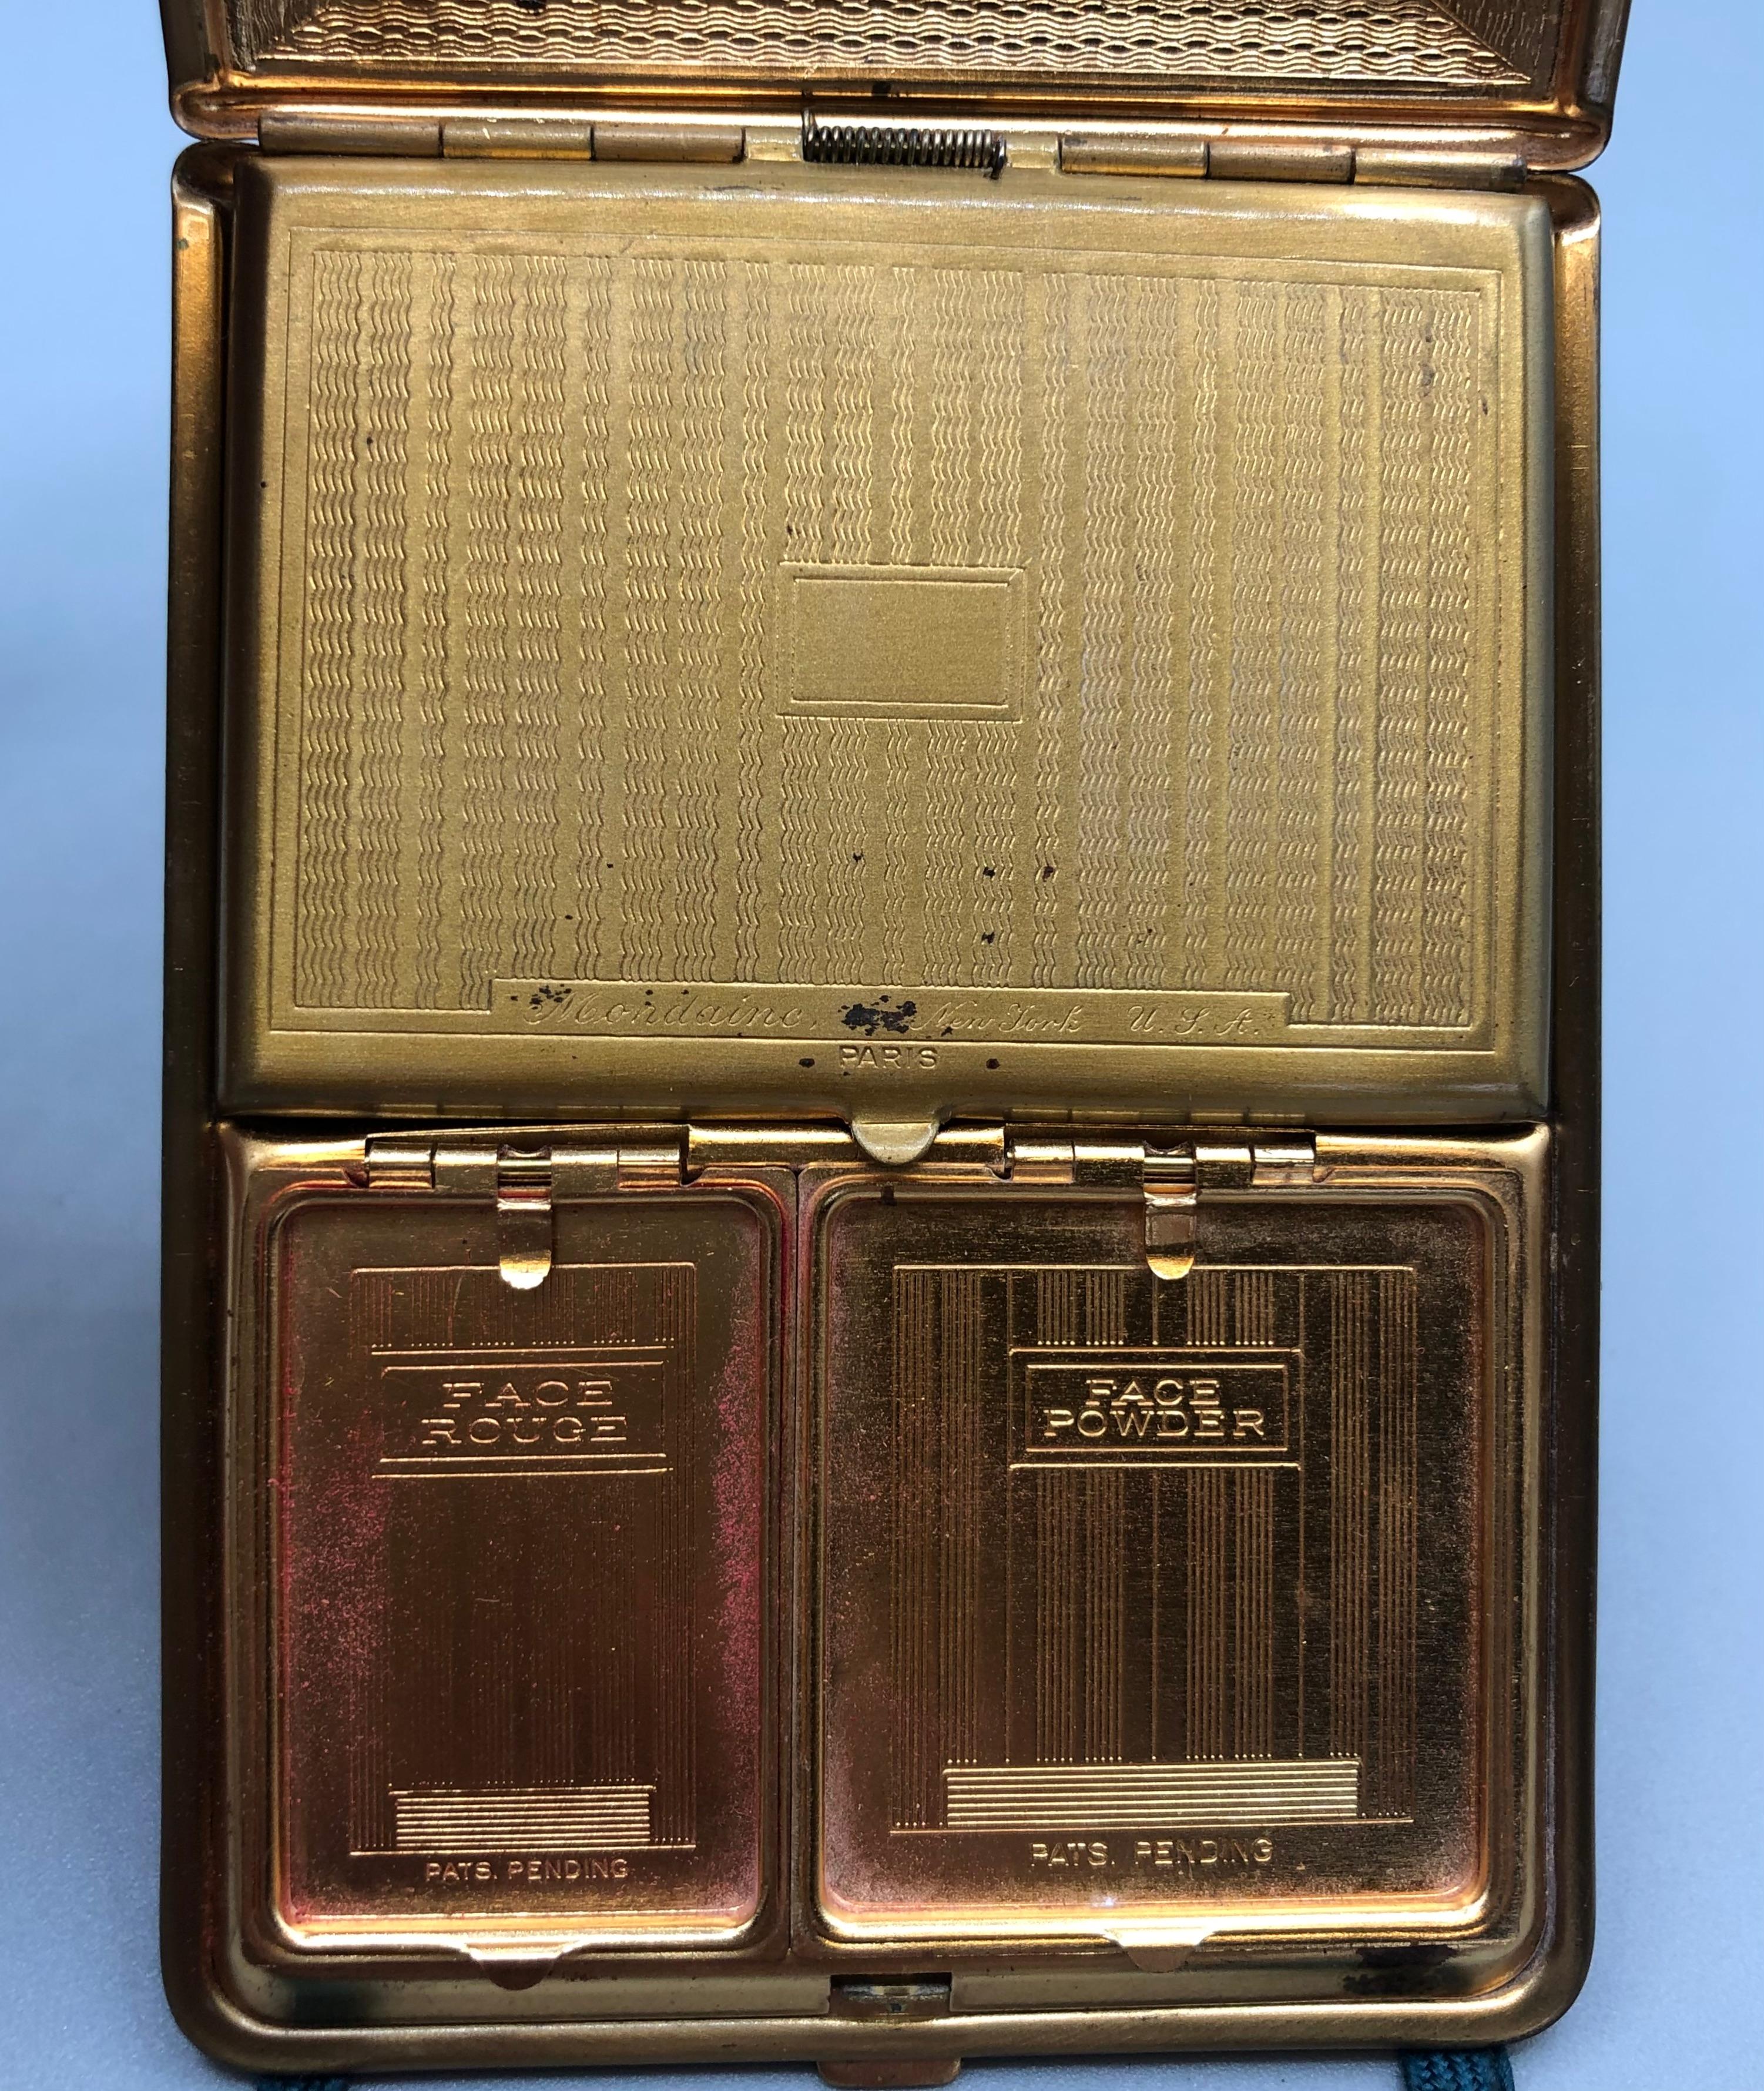 1920s vintage makeup compacts